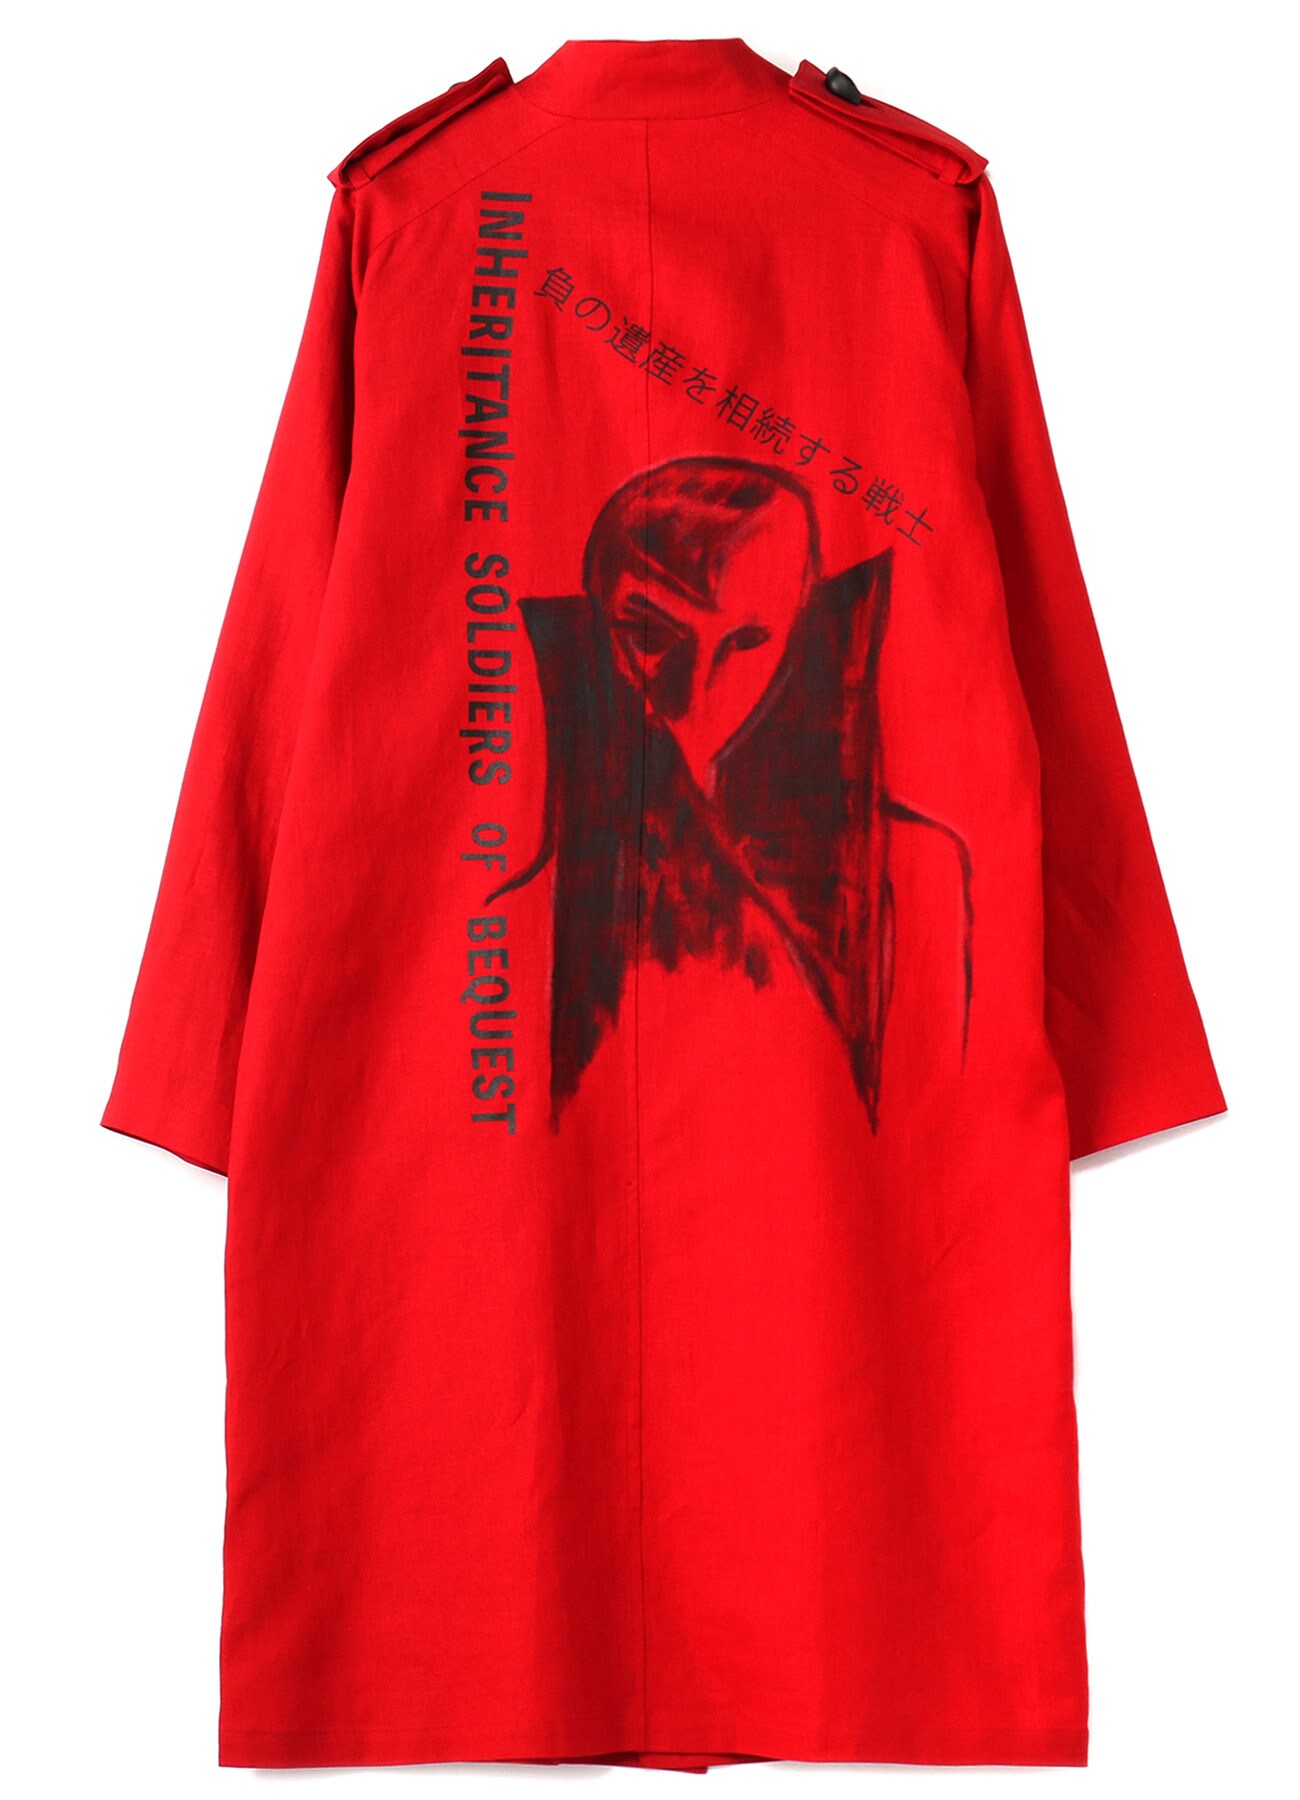 RED 40/- LINEN EYE BUTTON DRESS